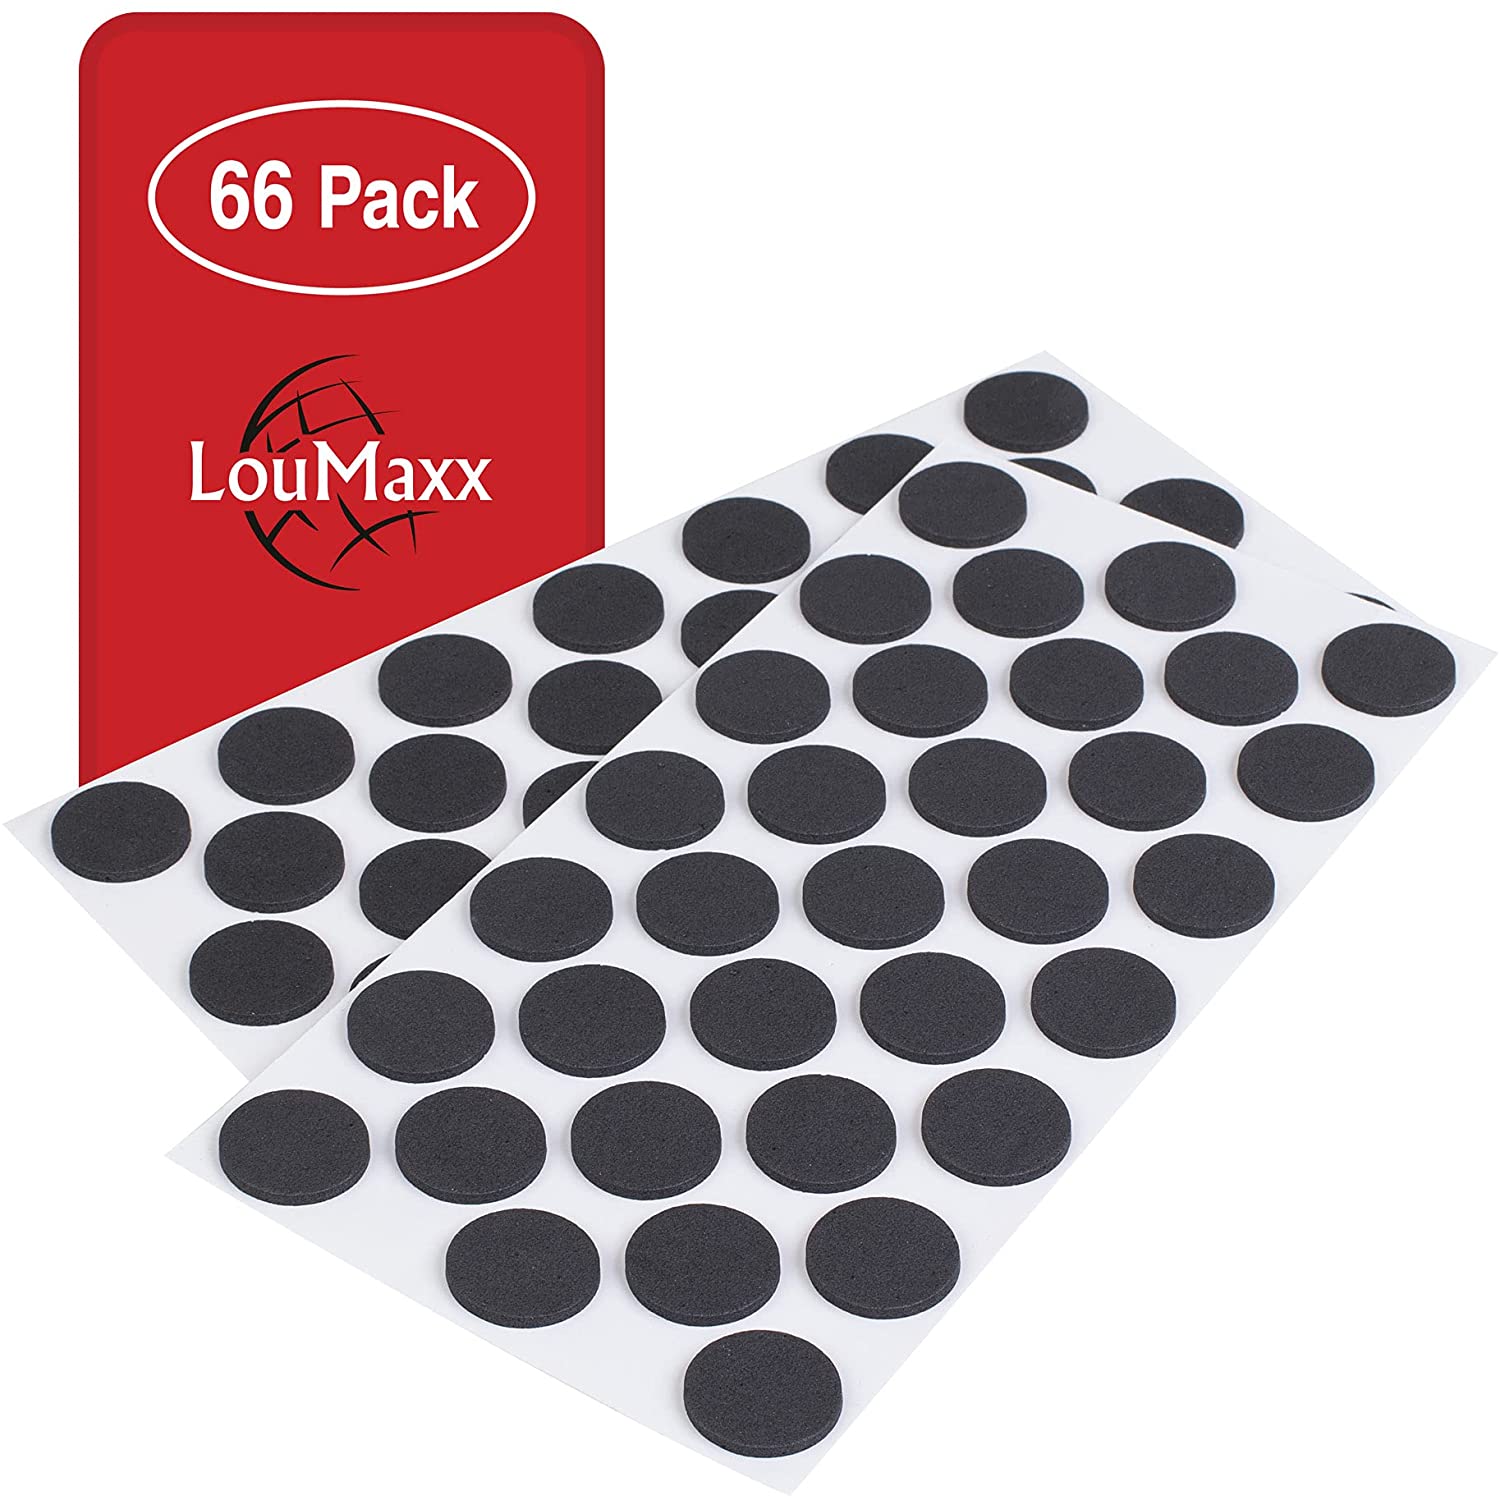 LouMaxx Antirutsch Pads selbstklebend | 66 x Anti Rutsch Möbelstopper schwarz, rund Ø 24 mm | rutschhemmend mit extra starkem Halt